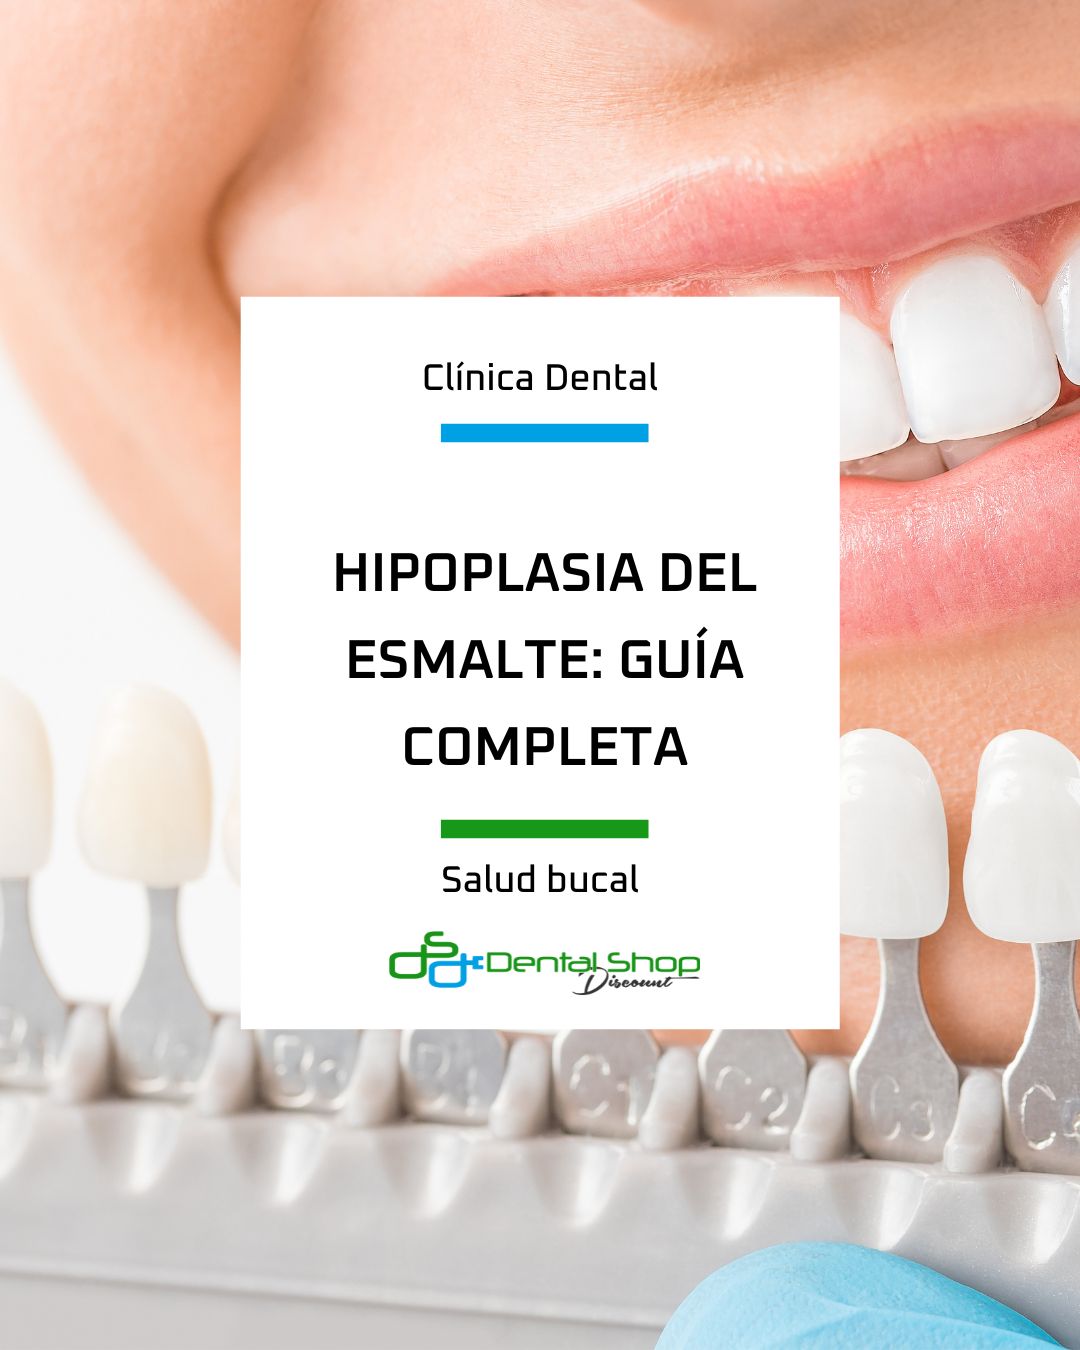 Los tratamientos dentales para hipoplasia dental pueden ayudar a mejorar la apariencia de la dentadura aportando seguridad y salud bucodental.